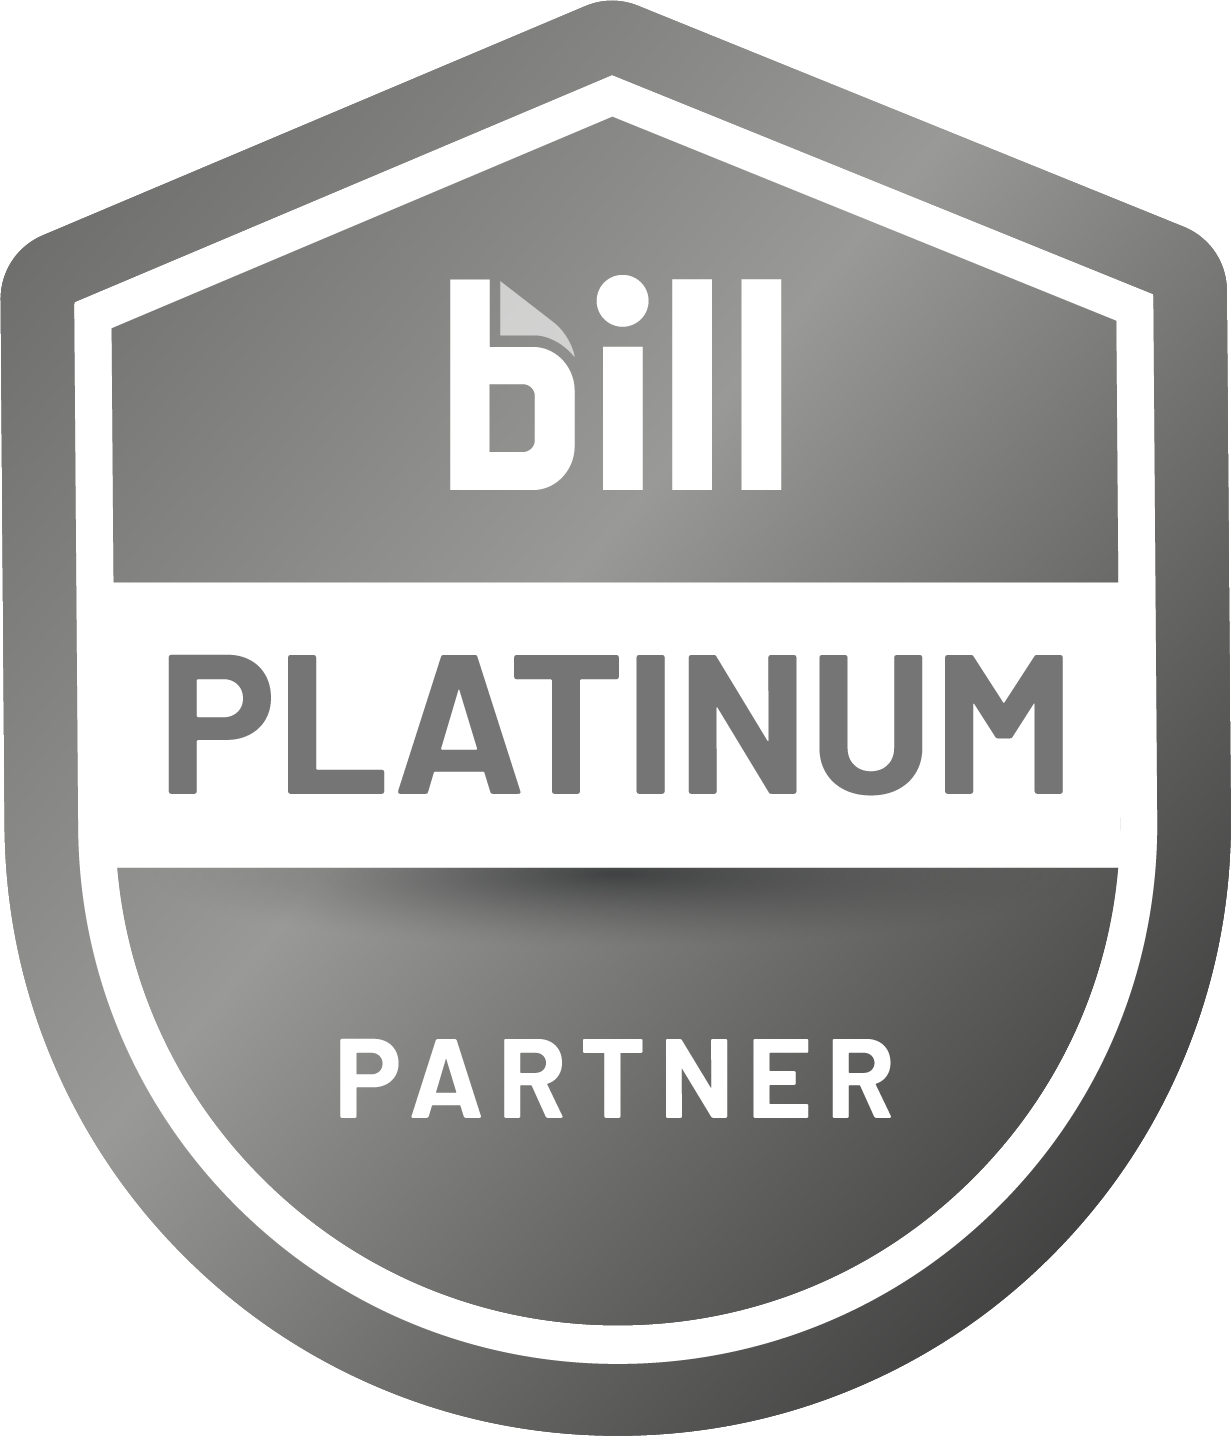 BILL Accountant Partner Program - Platinum Partner